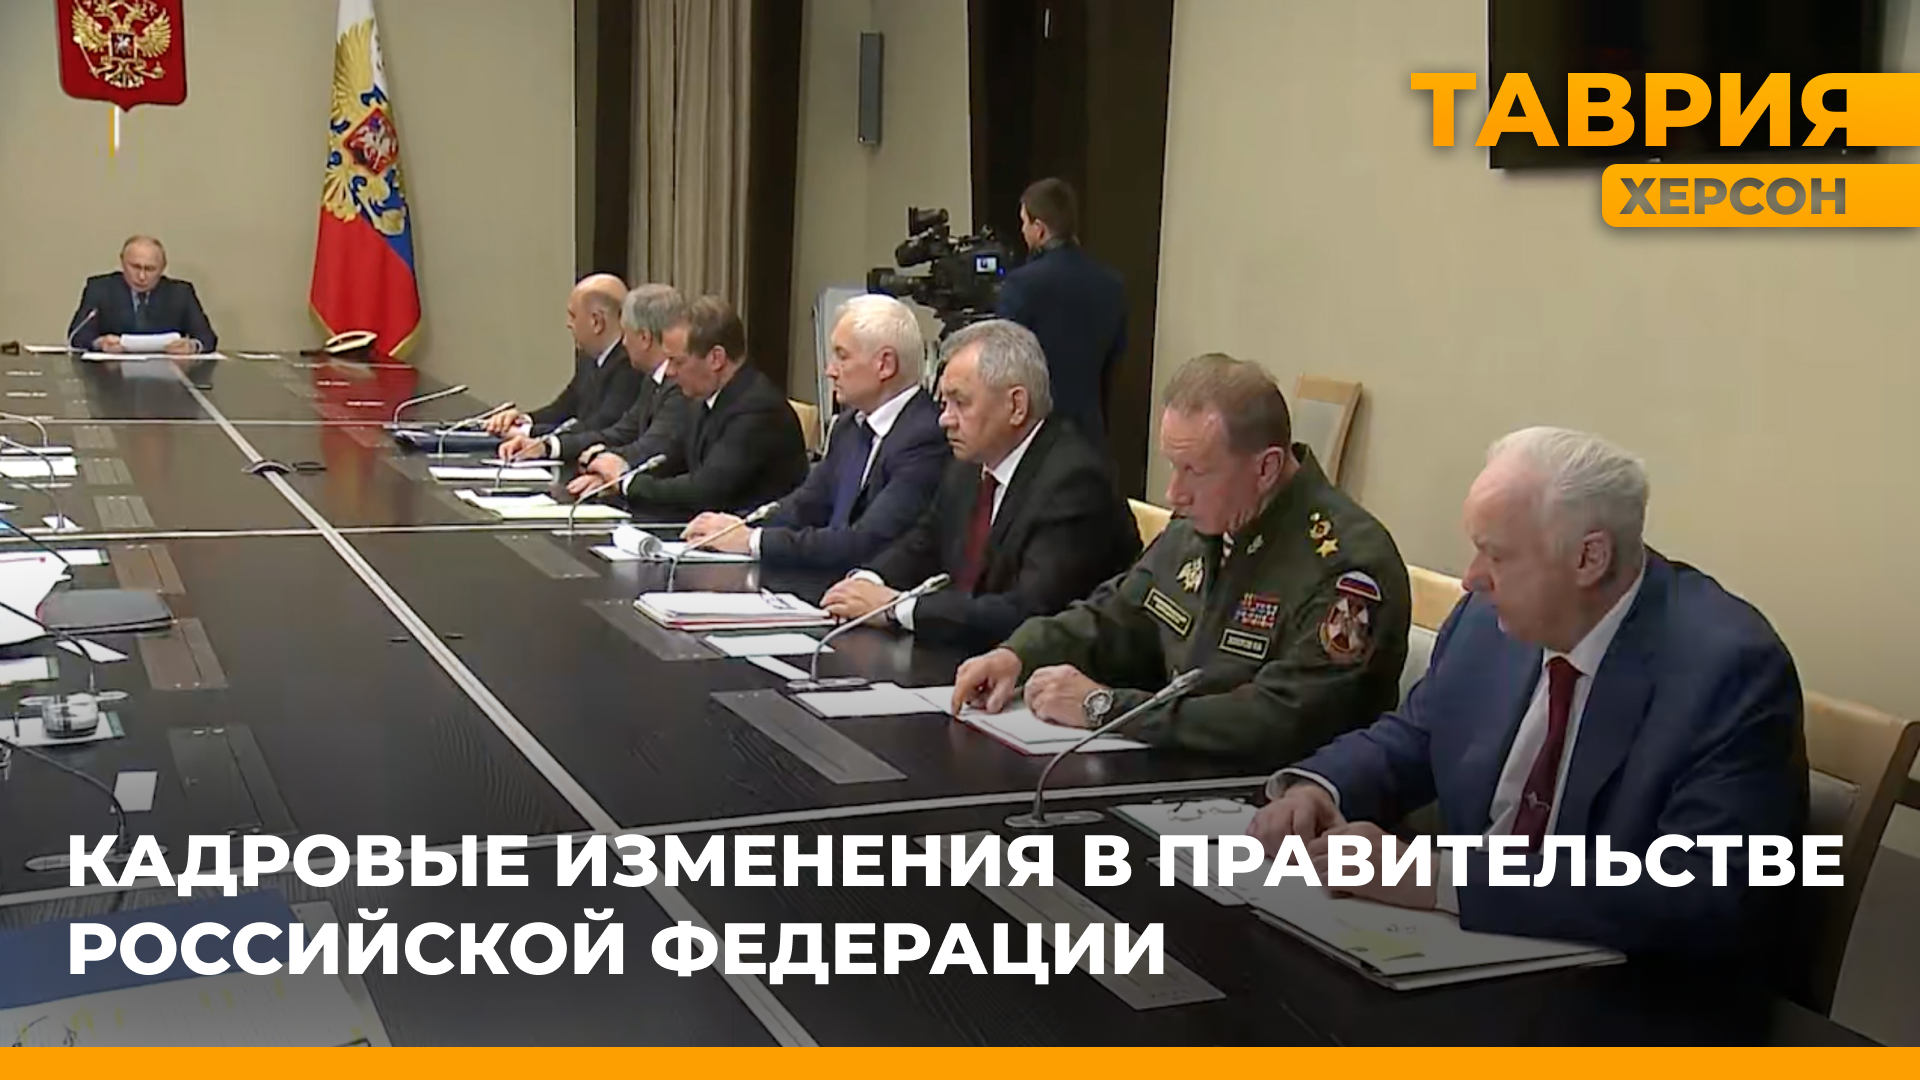 Владимир Путин предложил на должность министра обороны Андрея Белоусова